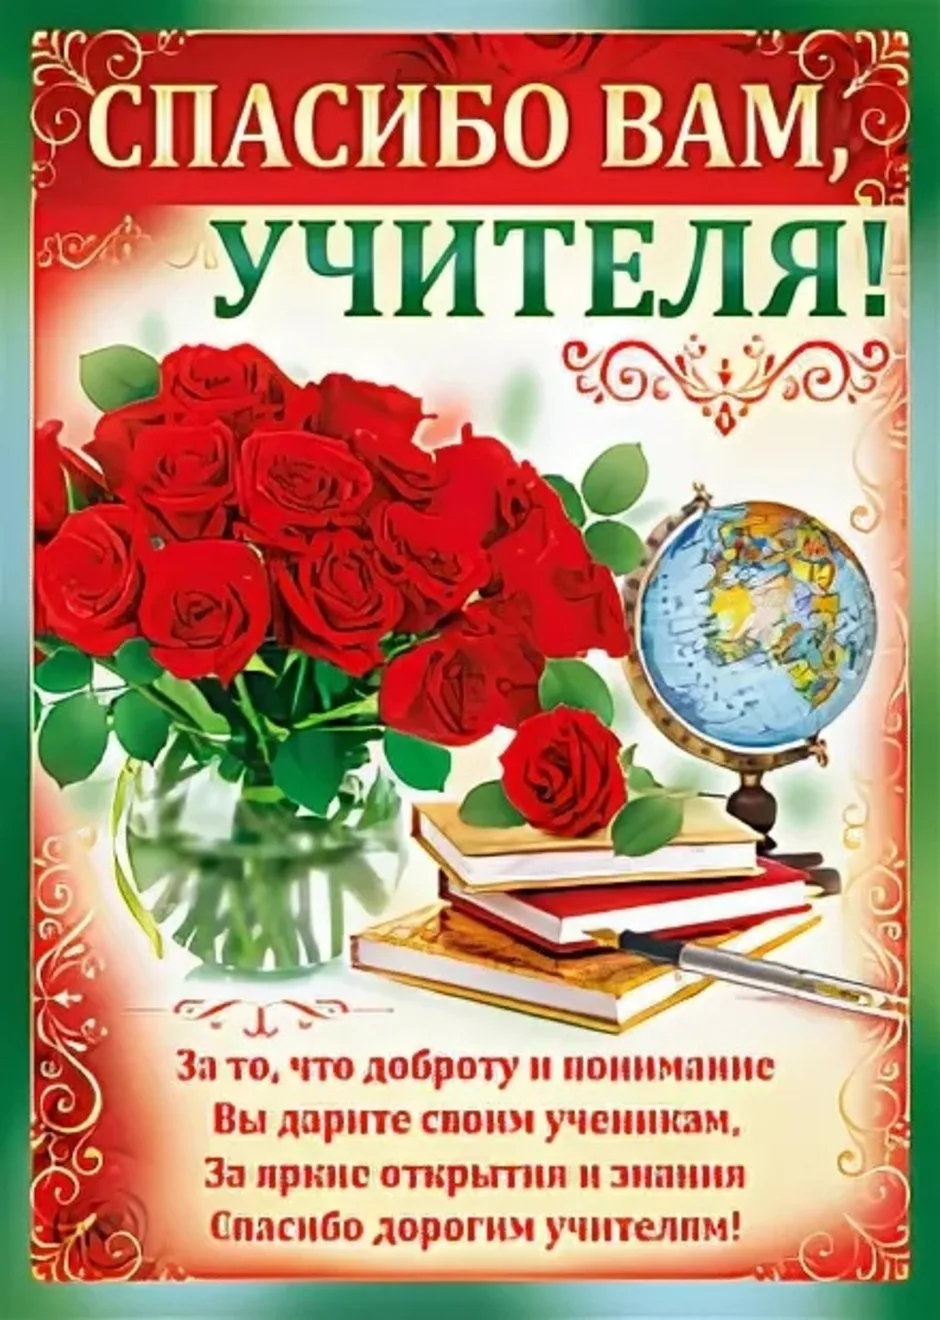 Фото Поздравление учителю украинского языка #69